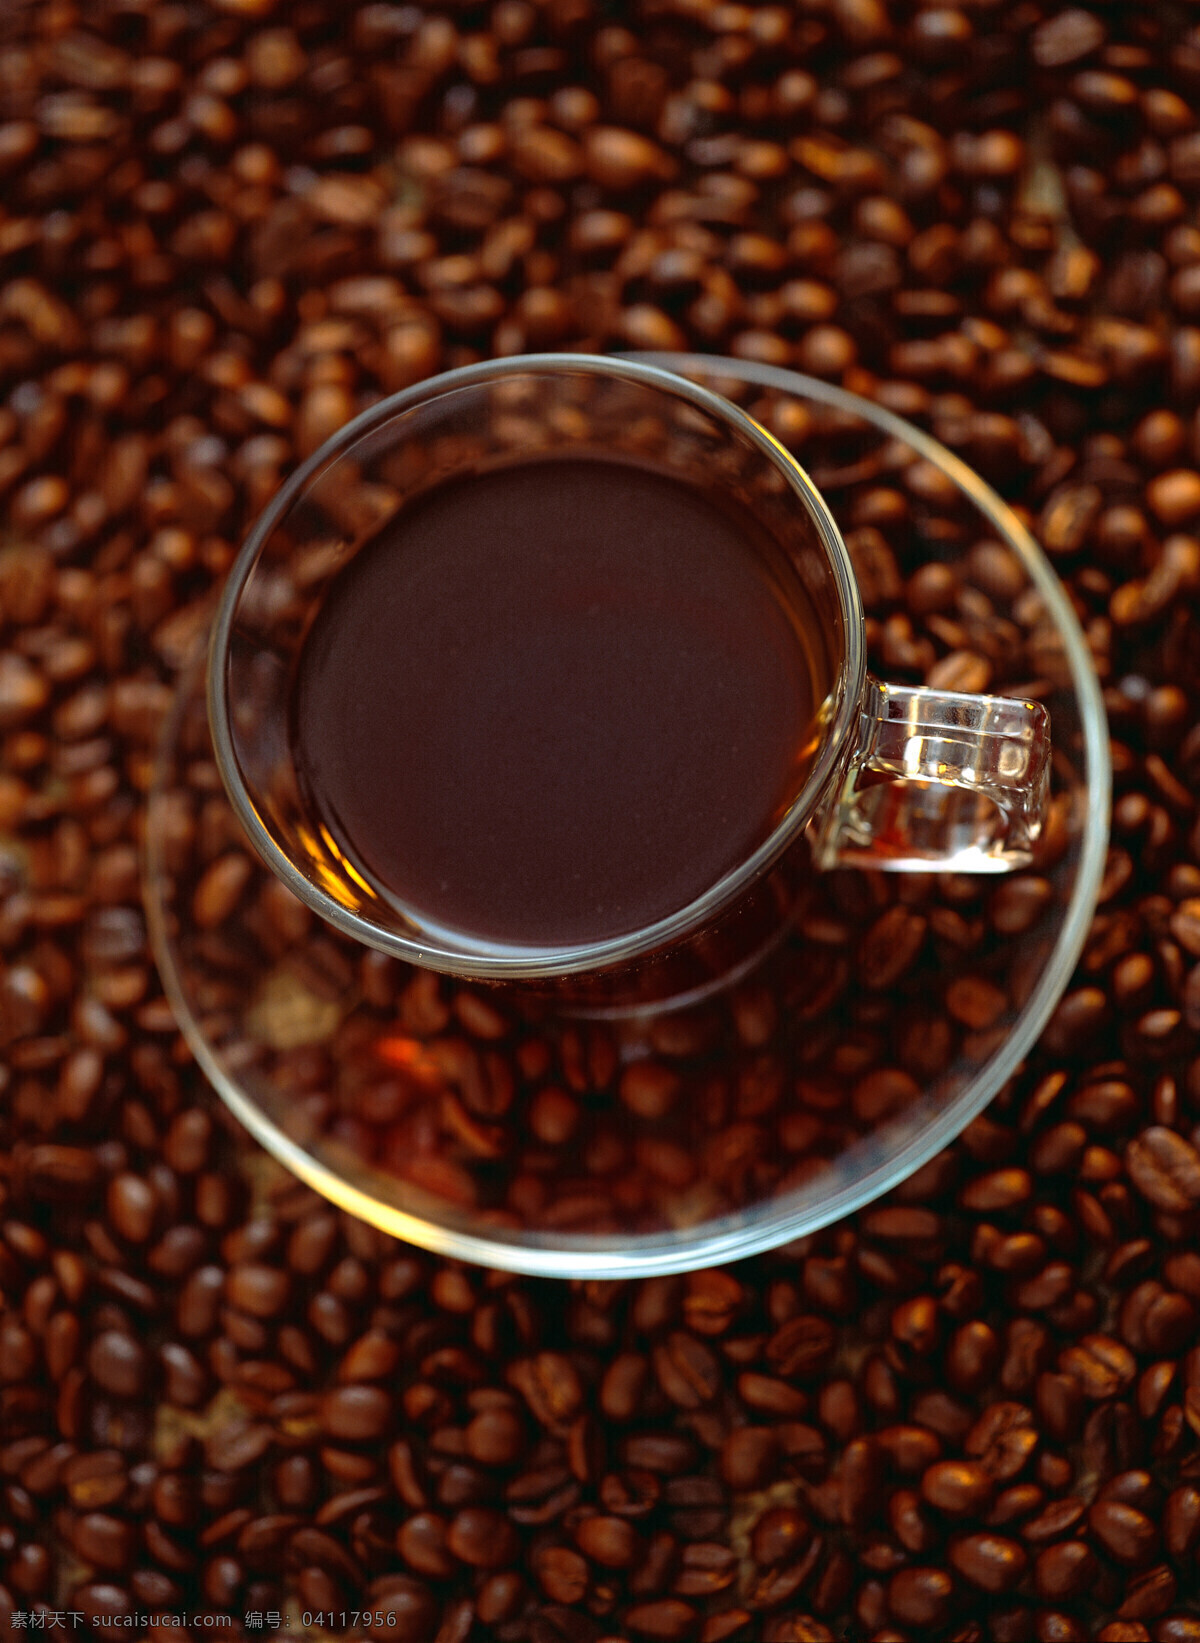 颗粒 咖啡豆 上 咖啡 一堆咖啡豆 果实 饱满 许多 很多 coffee 浓香 褐色 托盘 杯子 玻璃杯 麻袋 包装 铺垫 高清图片 咖啡图片 餐饮美食